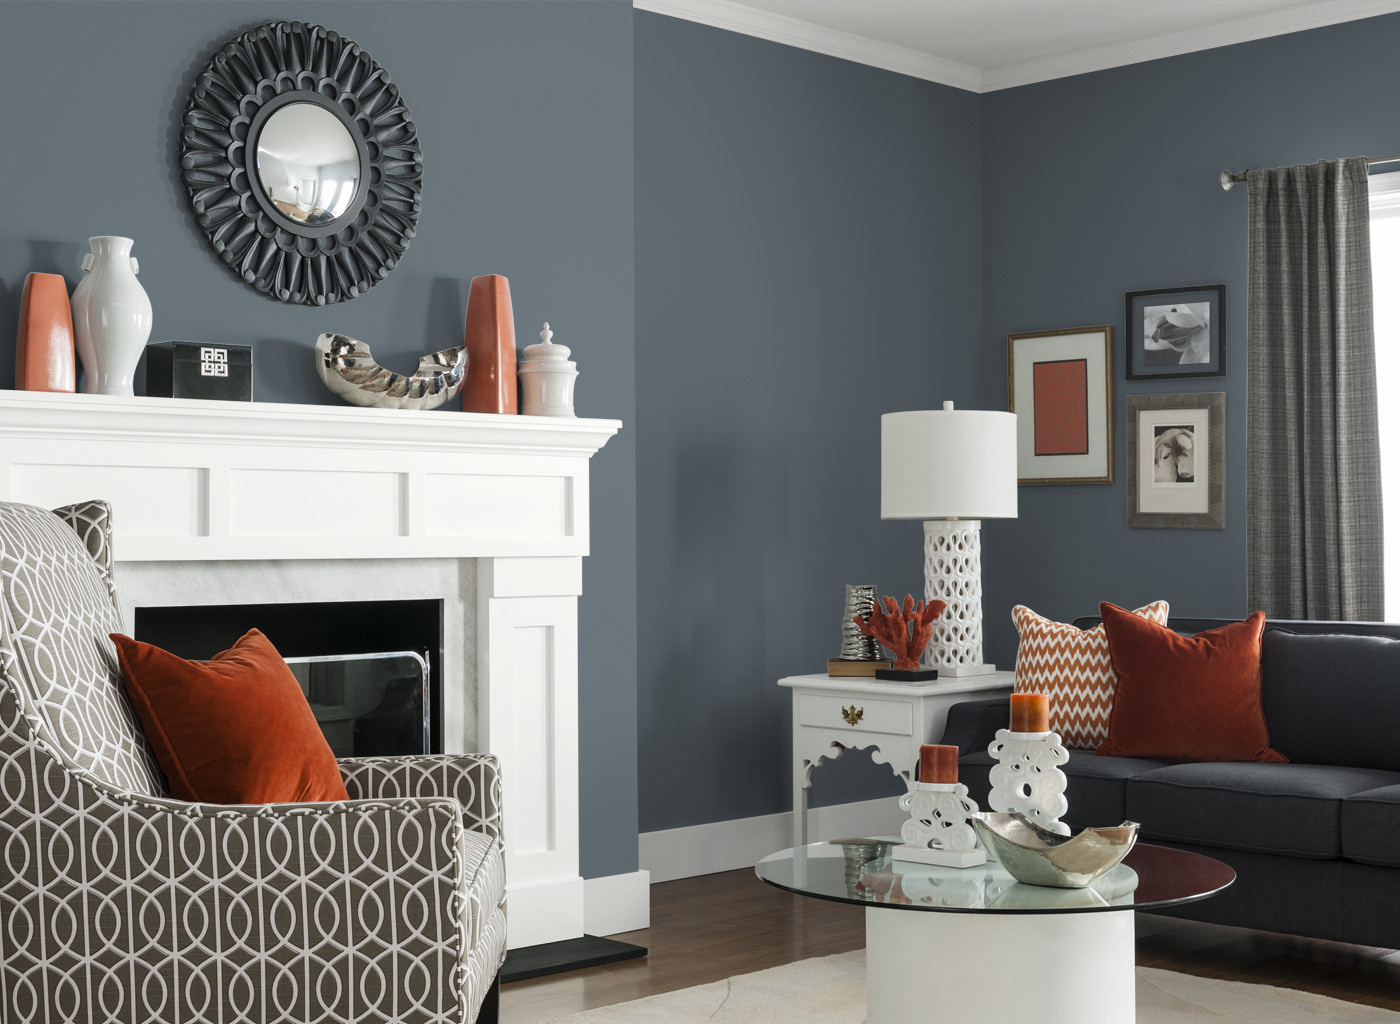 Best ideas about Grey Paint Colors For Living Room
. Save or Pin 32 Light Grey Paint For Living Room Best Paint Colors Now.